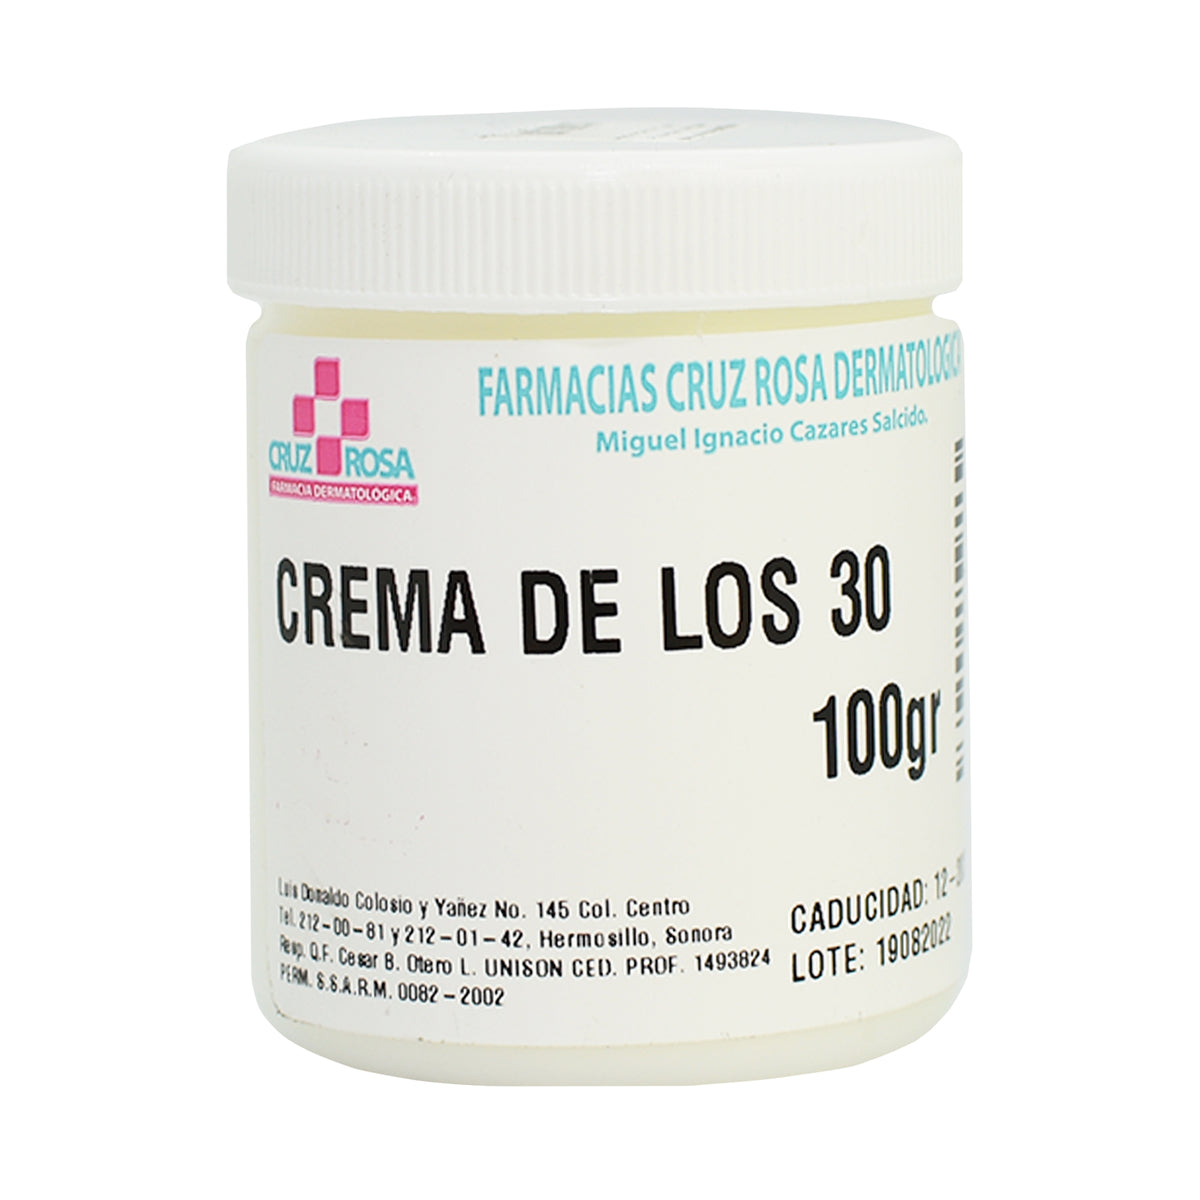 GLICERINA SÓLIDA 100GR - FARMACIA CRUZ ROSA, Farmacia Dermatológica Cruz  Rosa, Cuidado de la piel